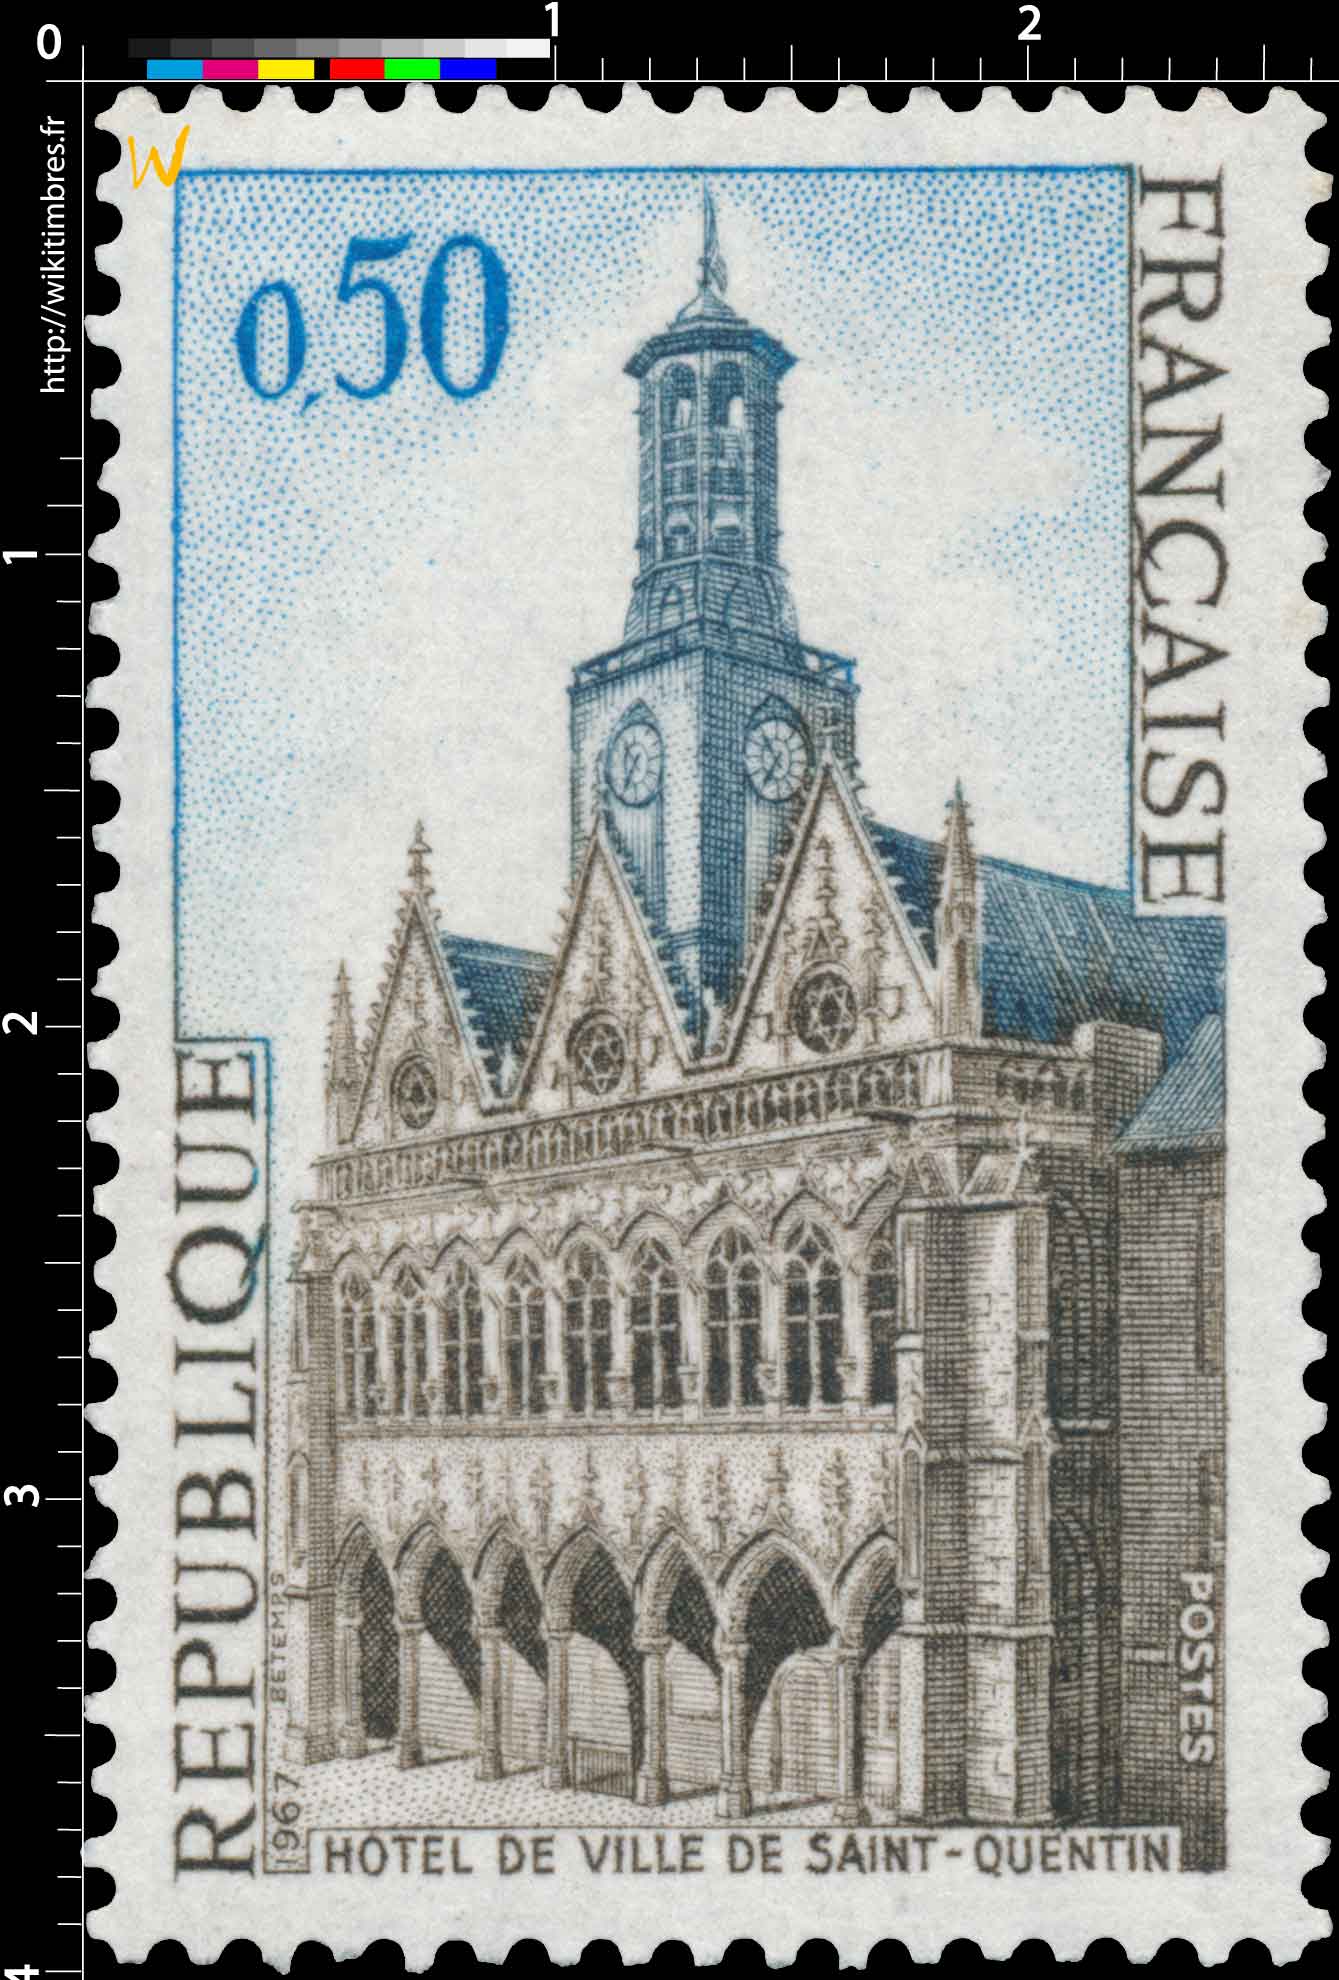 1967 HÔTEL DE VILLE DE SAINT-QUENTIN